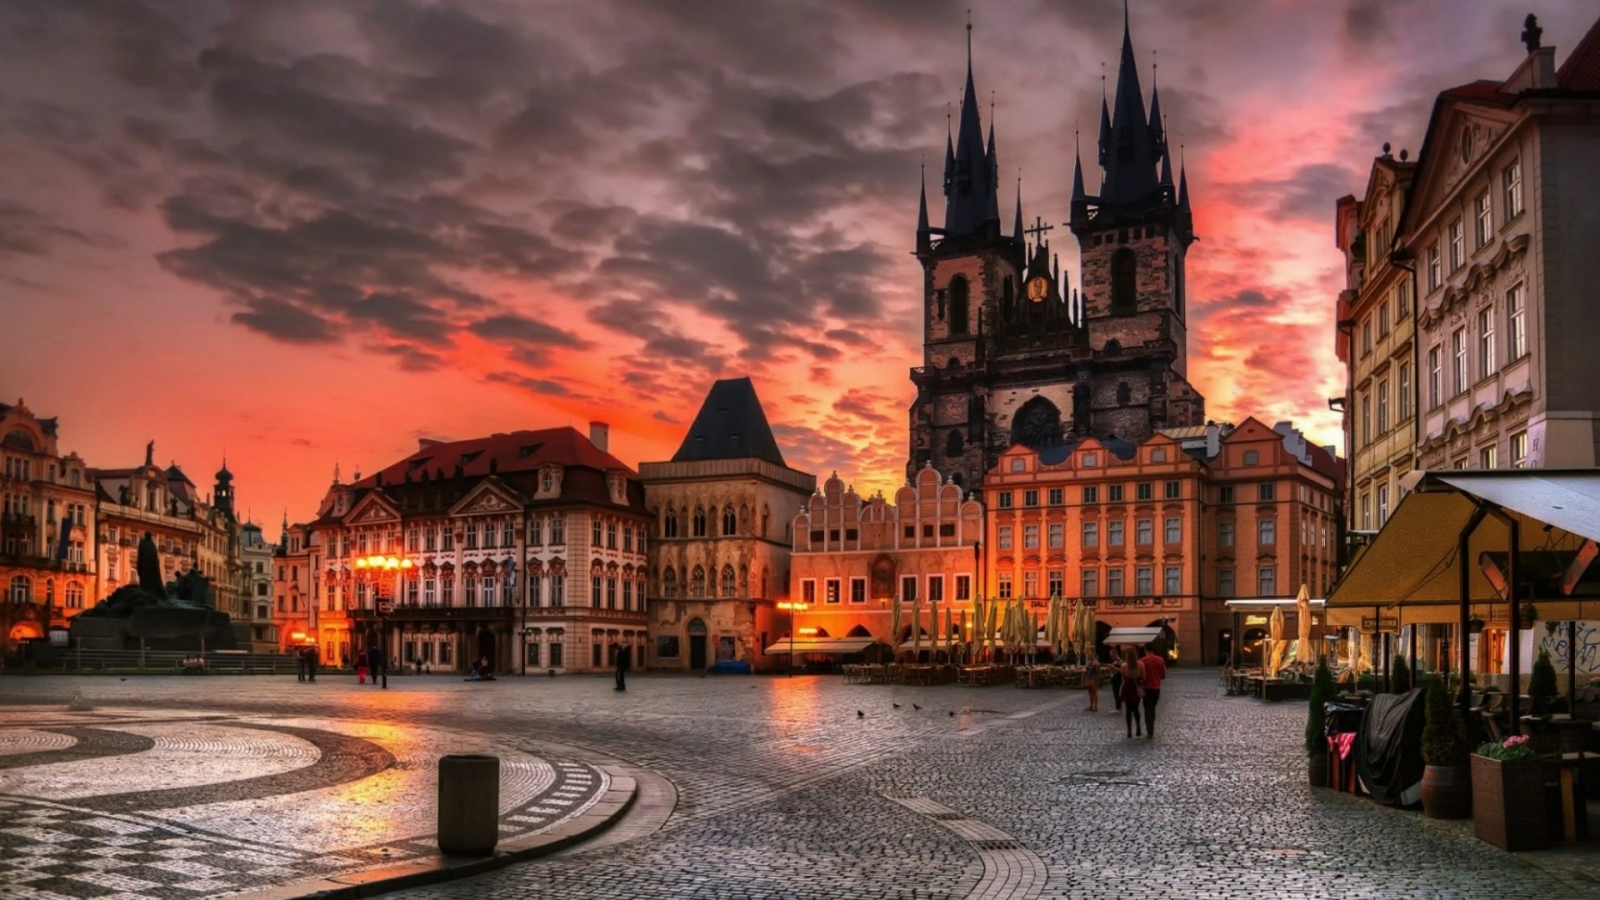 世上沒有第二座城市比得上布拉格更令人流連忘返。布拉格豐富的歷史與文化、充滿藝術氣息的城市風貌，深深抓住每一個人的心。只要去過一次布拉格，你就會無時不刻想著再回去。